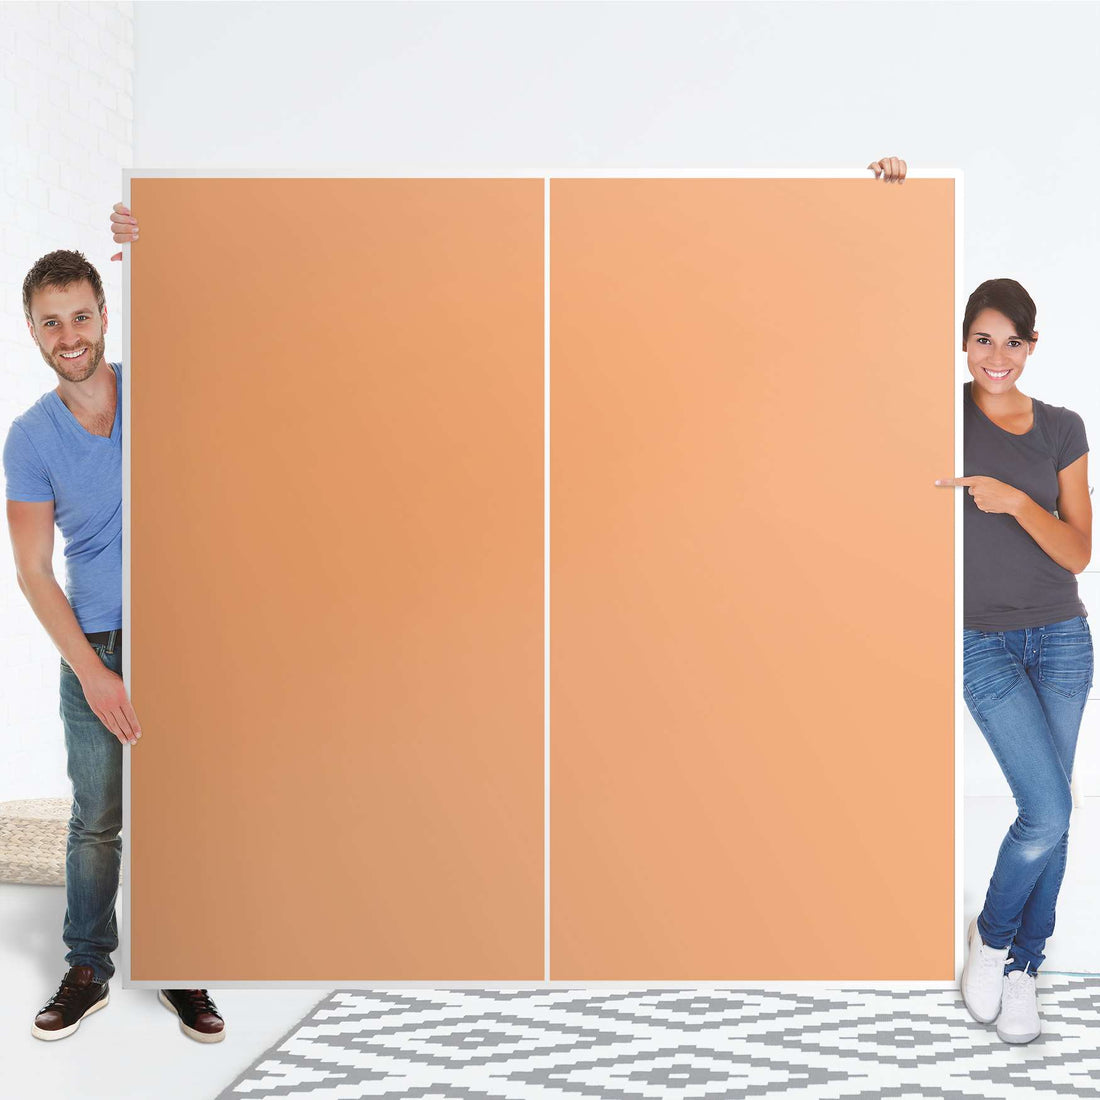 Möbel Klebefolie Orange Light - IKEA Pax Schrank 201 cm Höhe - Schiebetür - Folie